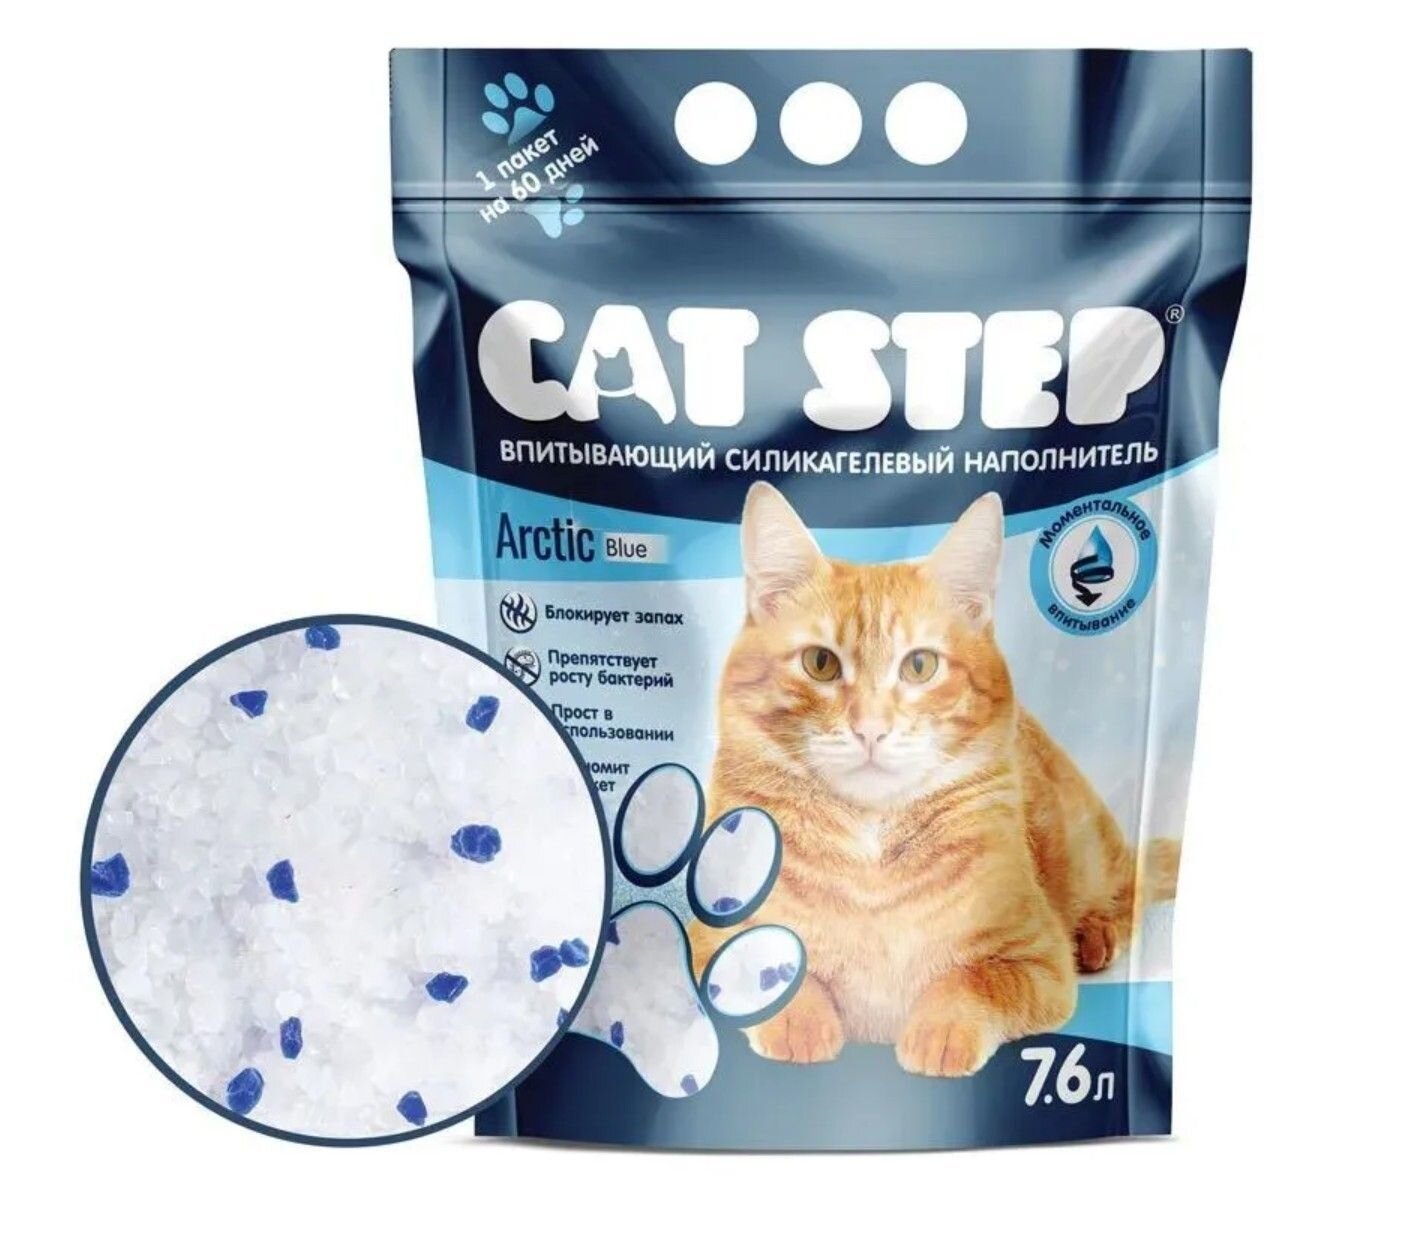 Наполнитель впитывающий силикагелевый CAT STEP Arctic Blue, 7,6 л